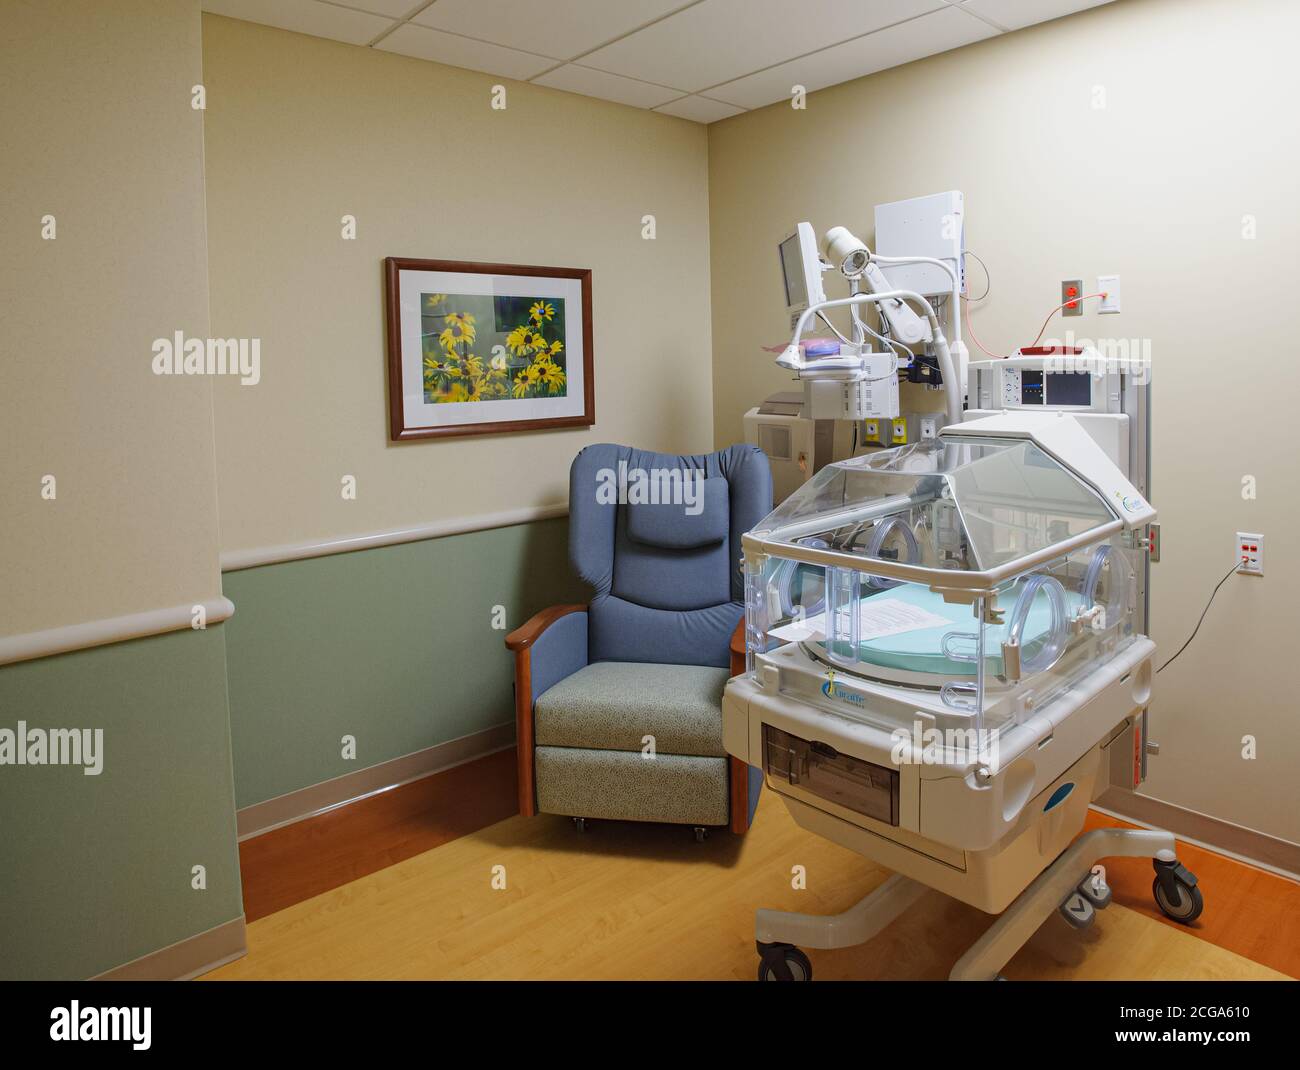 Sala de cuidados intensivos neonatales como parte del ala de maternidad de diseño moderno del Hospital Henry Ford West Bloomfield con arte de pared natural, Michigan, EE.UU Foto de stock